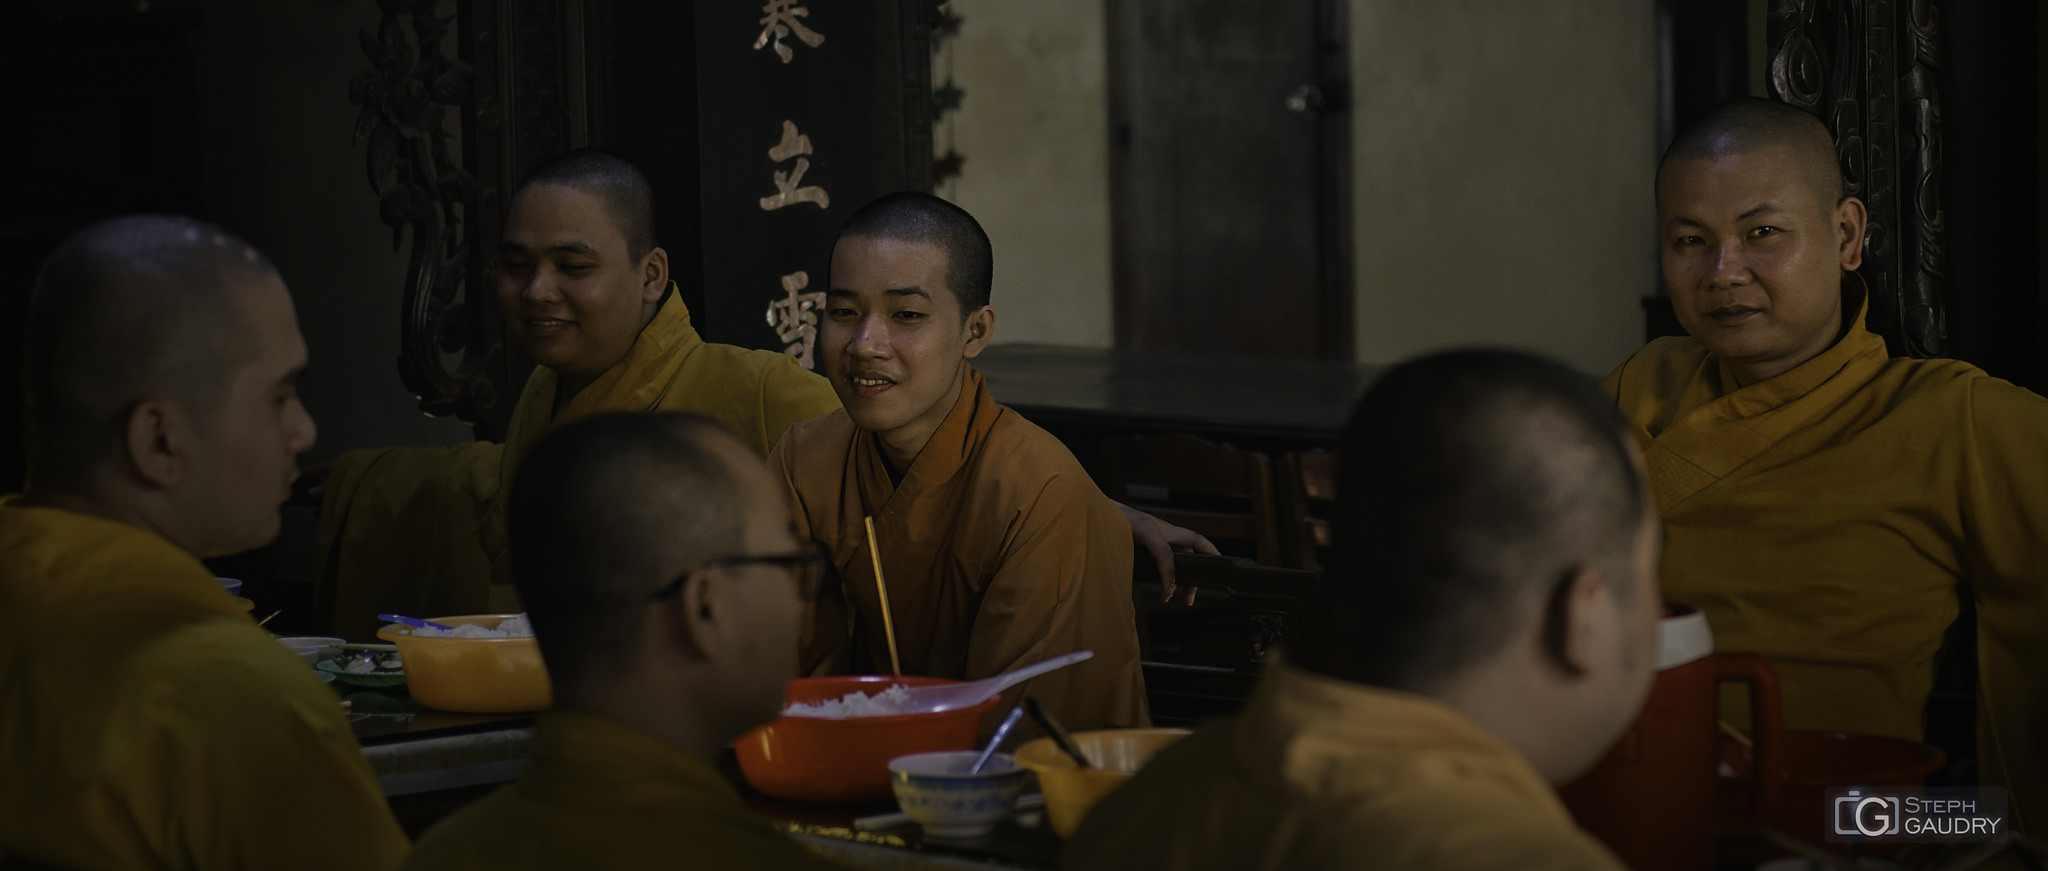 Le repas des moines bouddhistes [Cliquez pour lancer le diaporama]